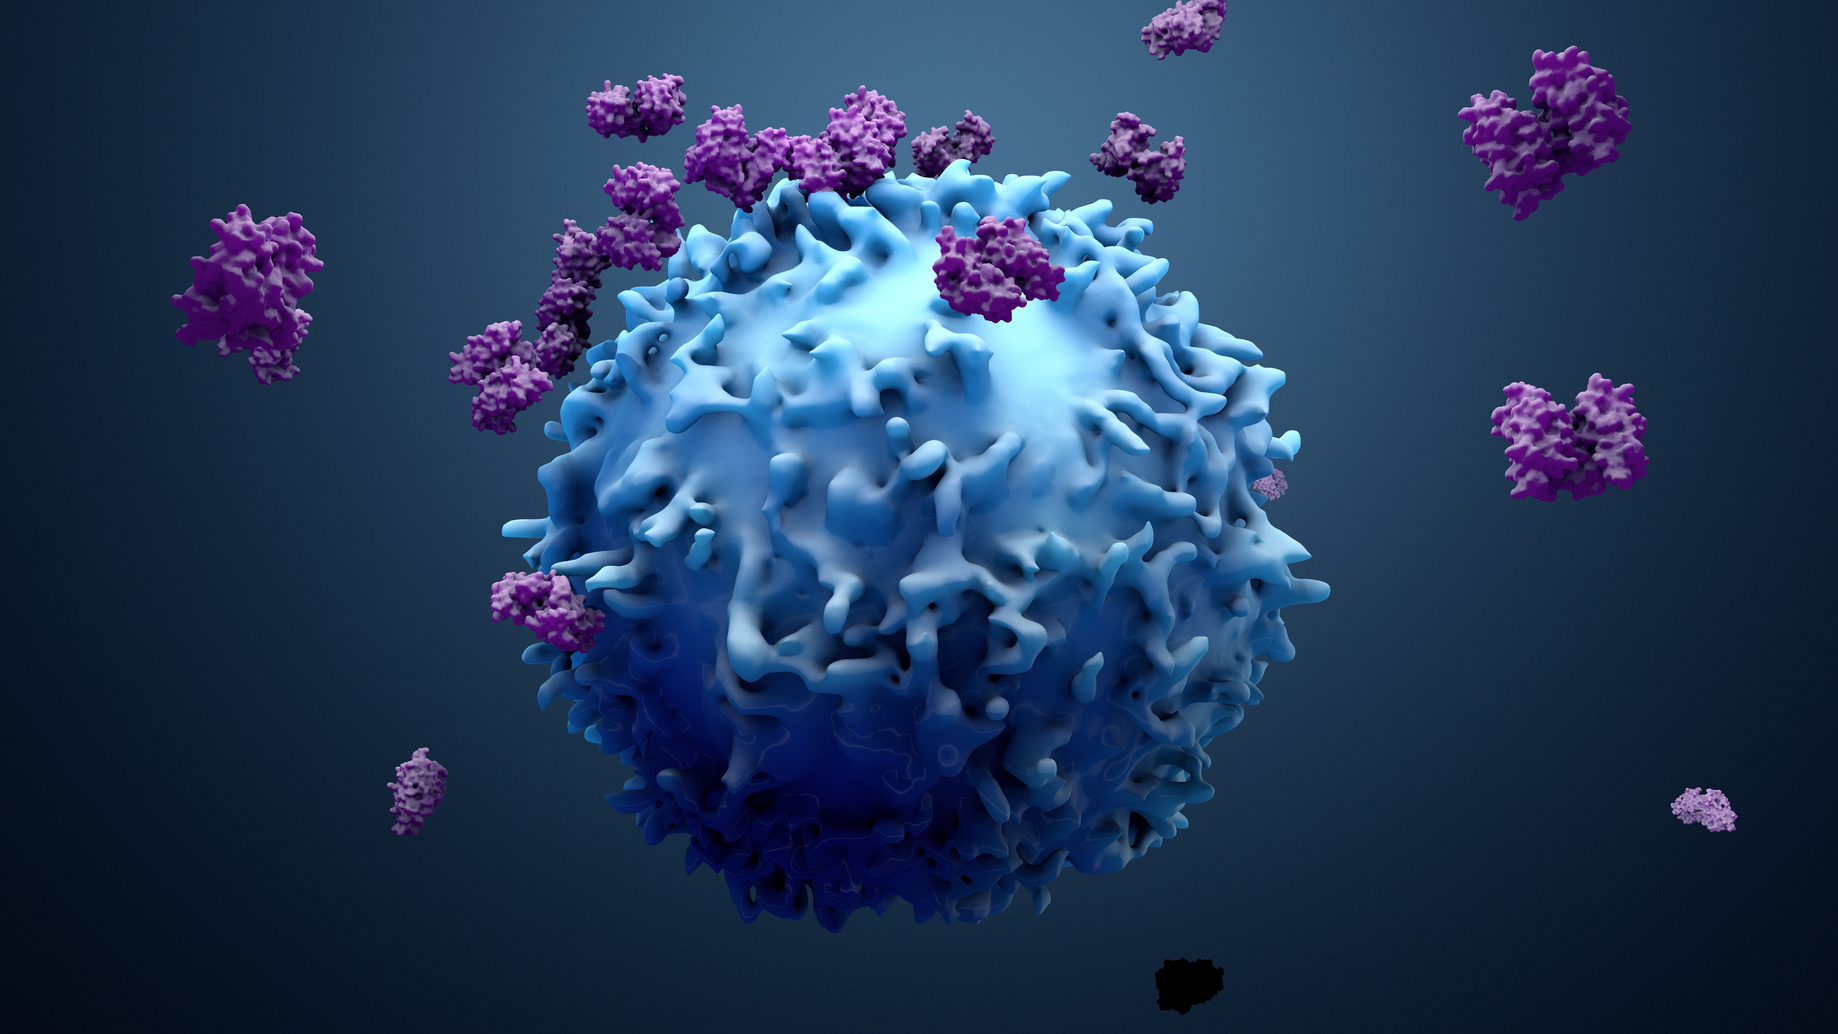 Le lumican empêche les cytokines de s’échapper vers d’autres tissus sains. © Design Cells, Fotolia